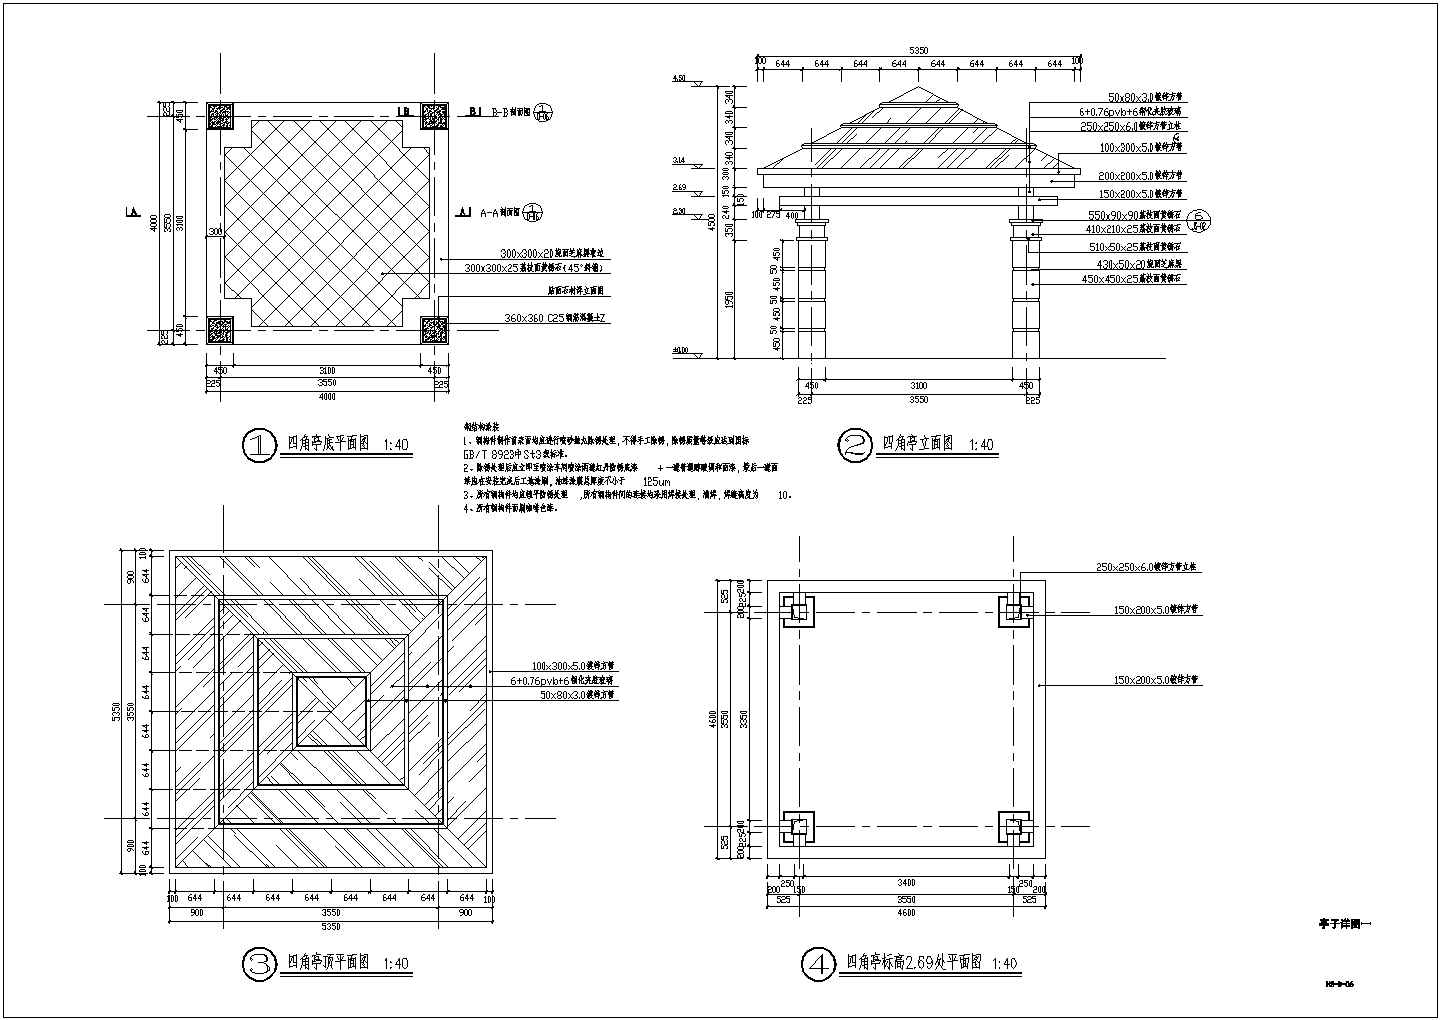 钢构玻璃顶四角亭施工图CAD设计